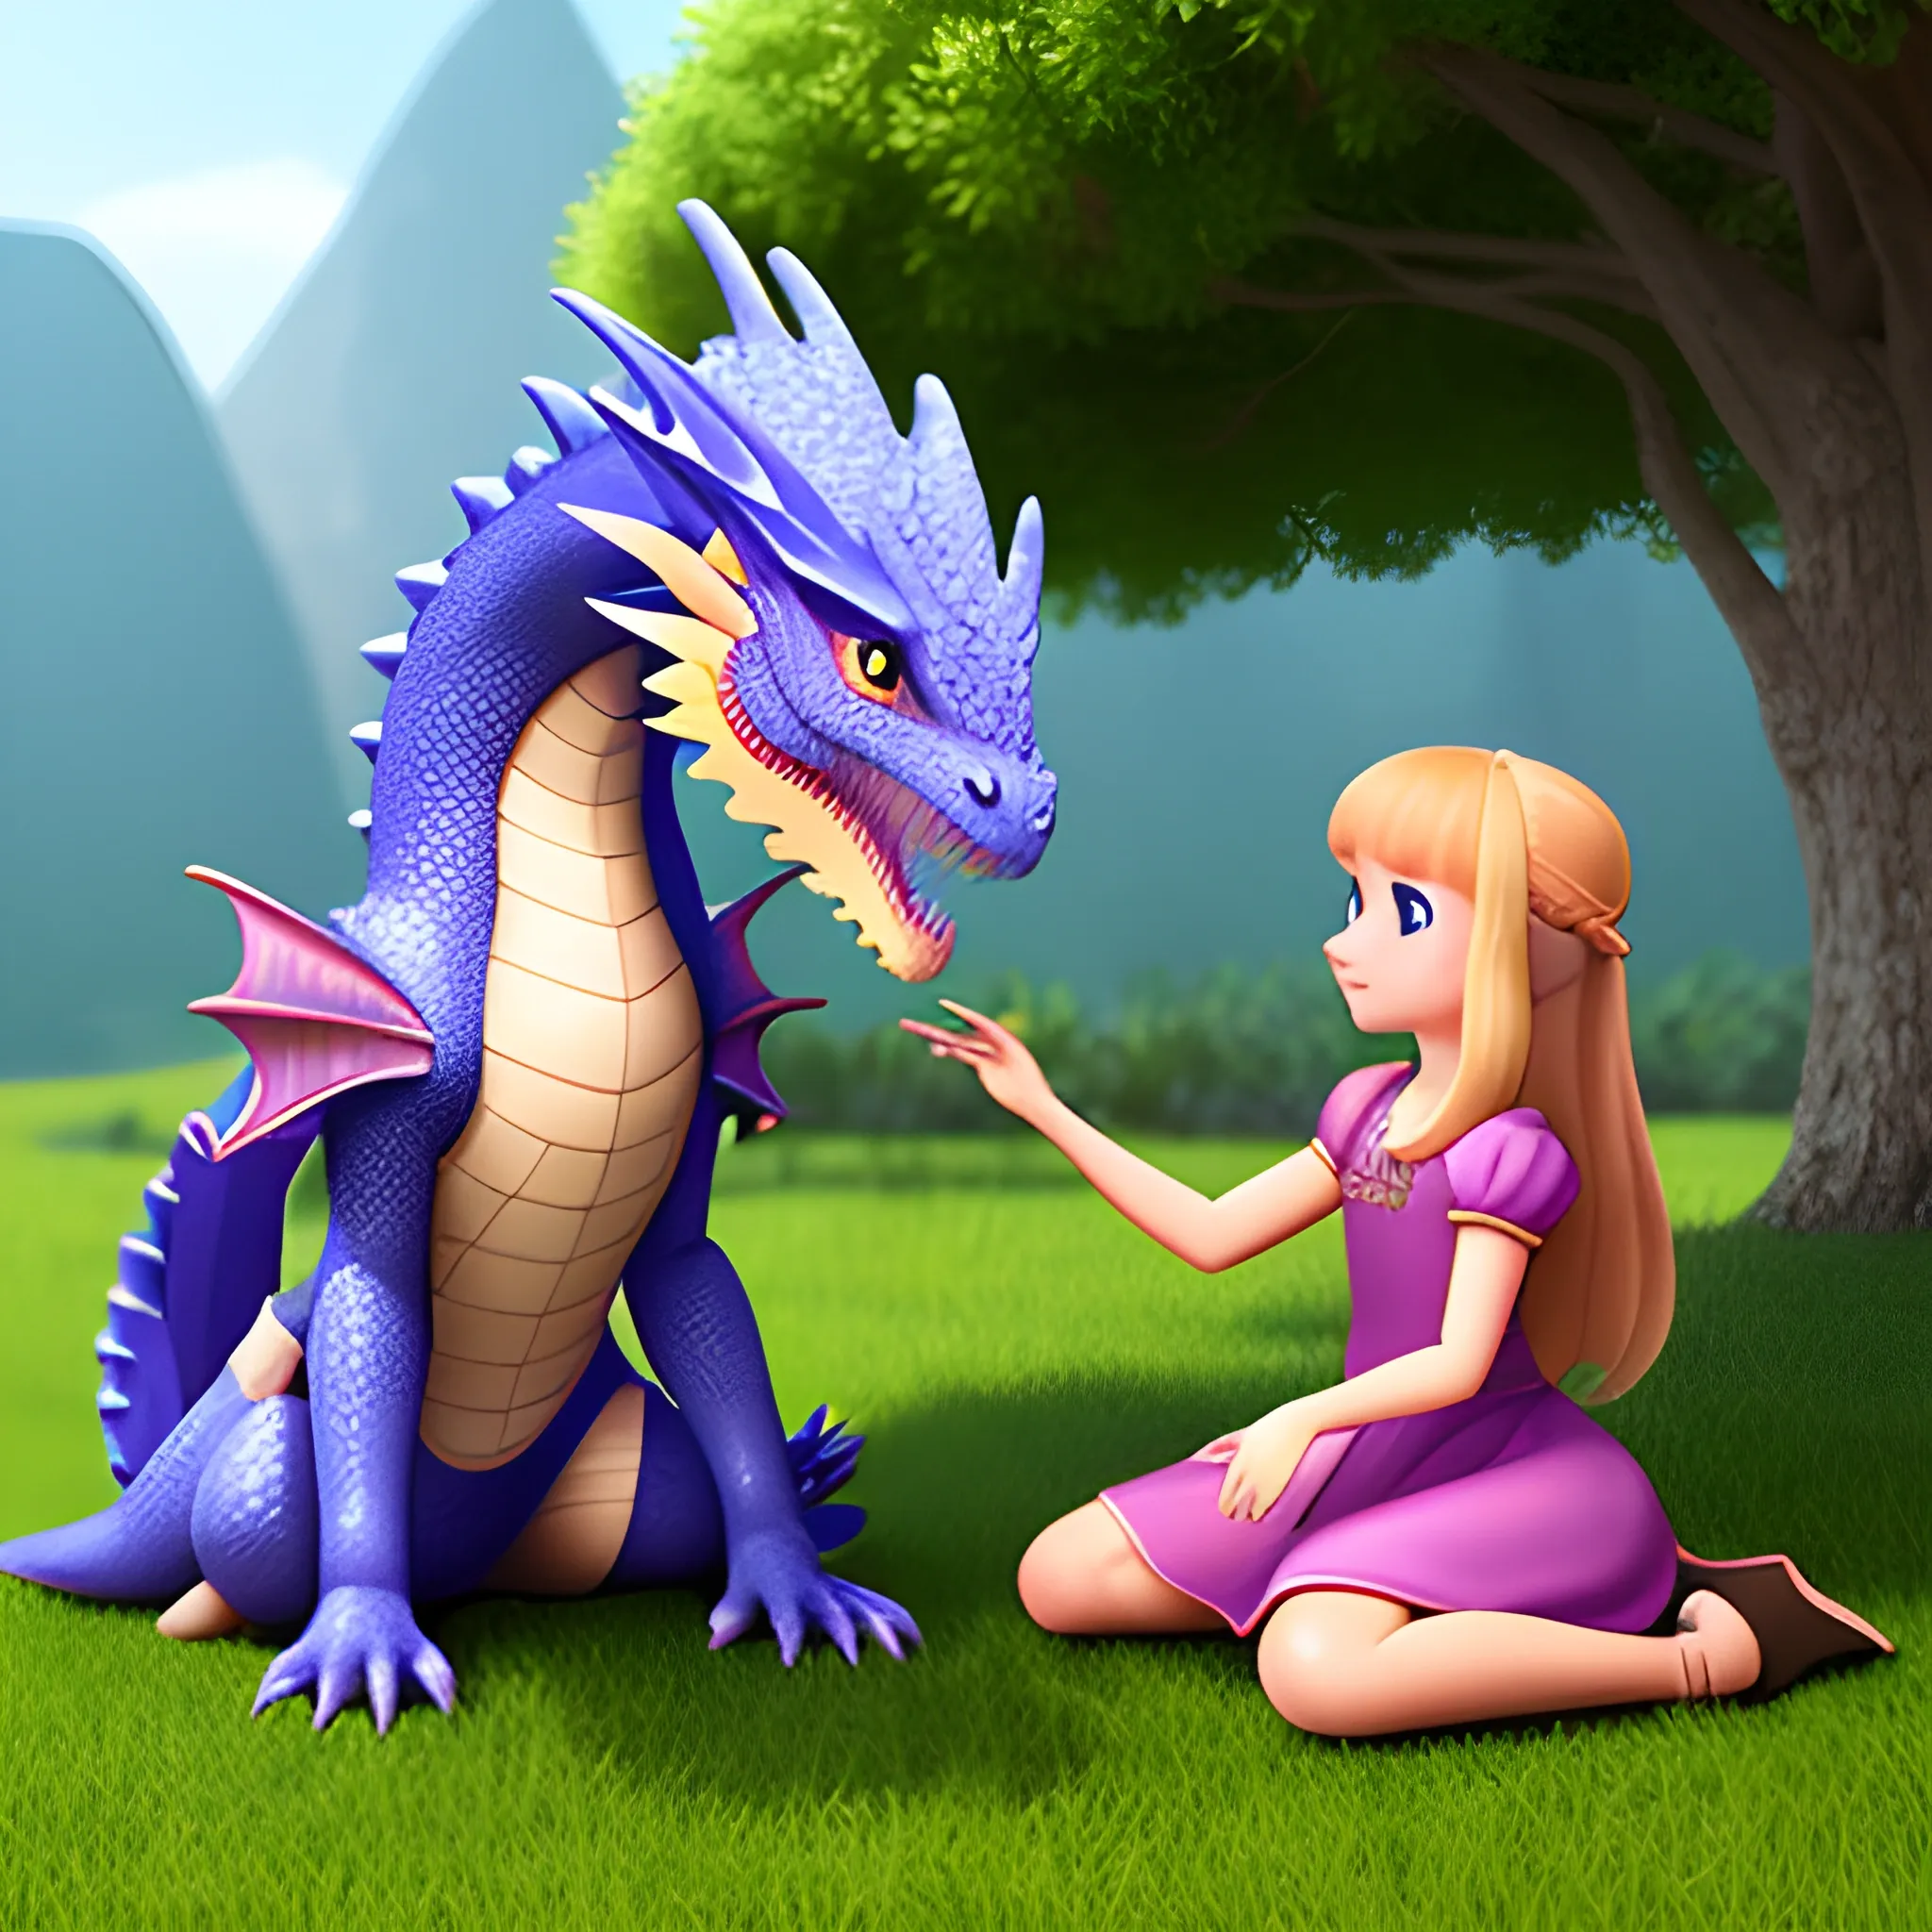 Princess petting her pet dragon, 3D